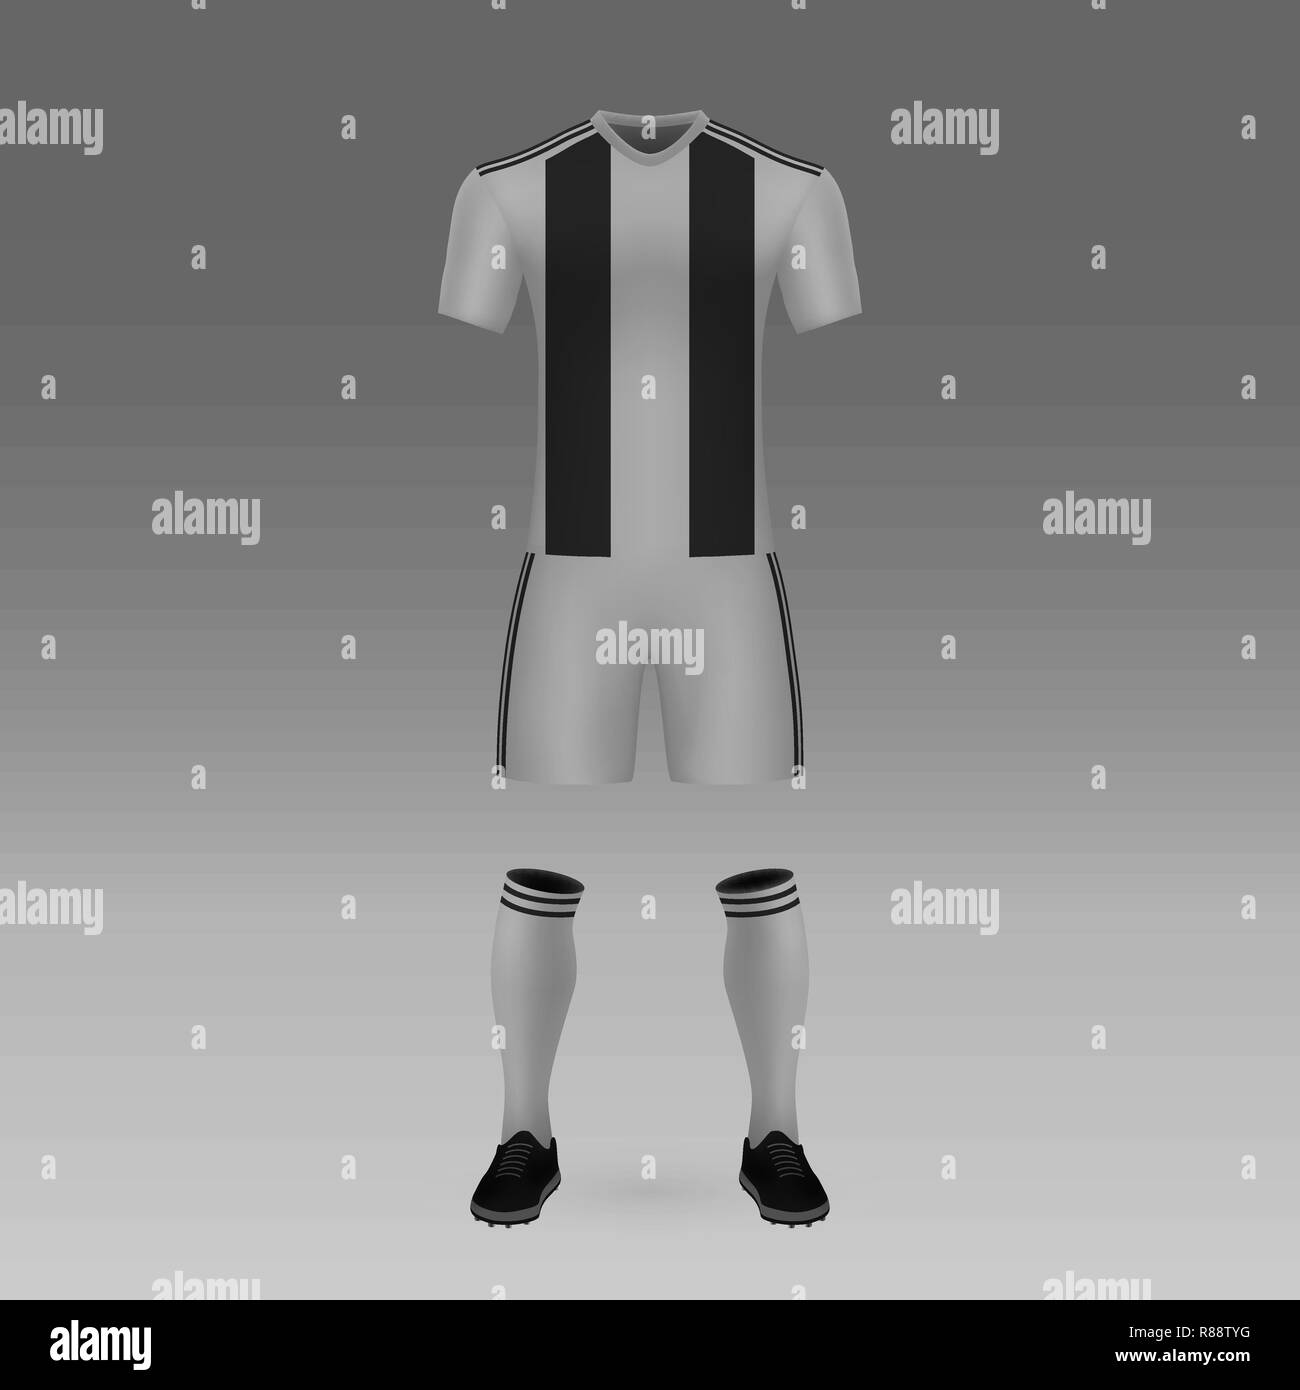 Publicidad de camisetas de futbol Imágenes de stock en blanco y negro -  Alamy